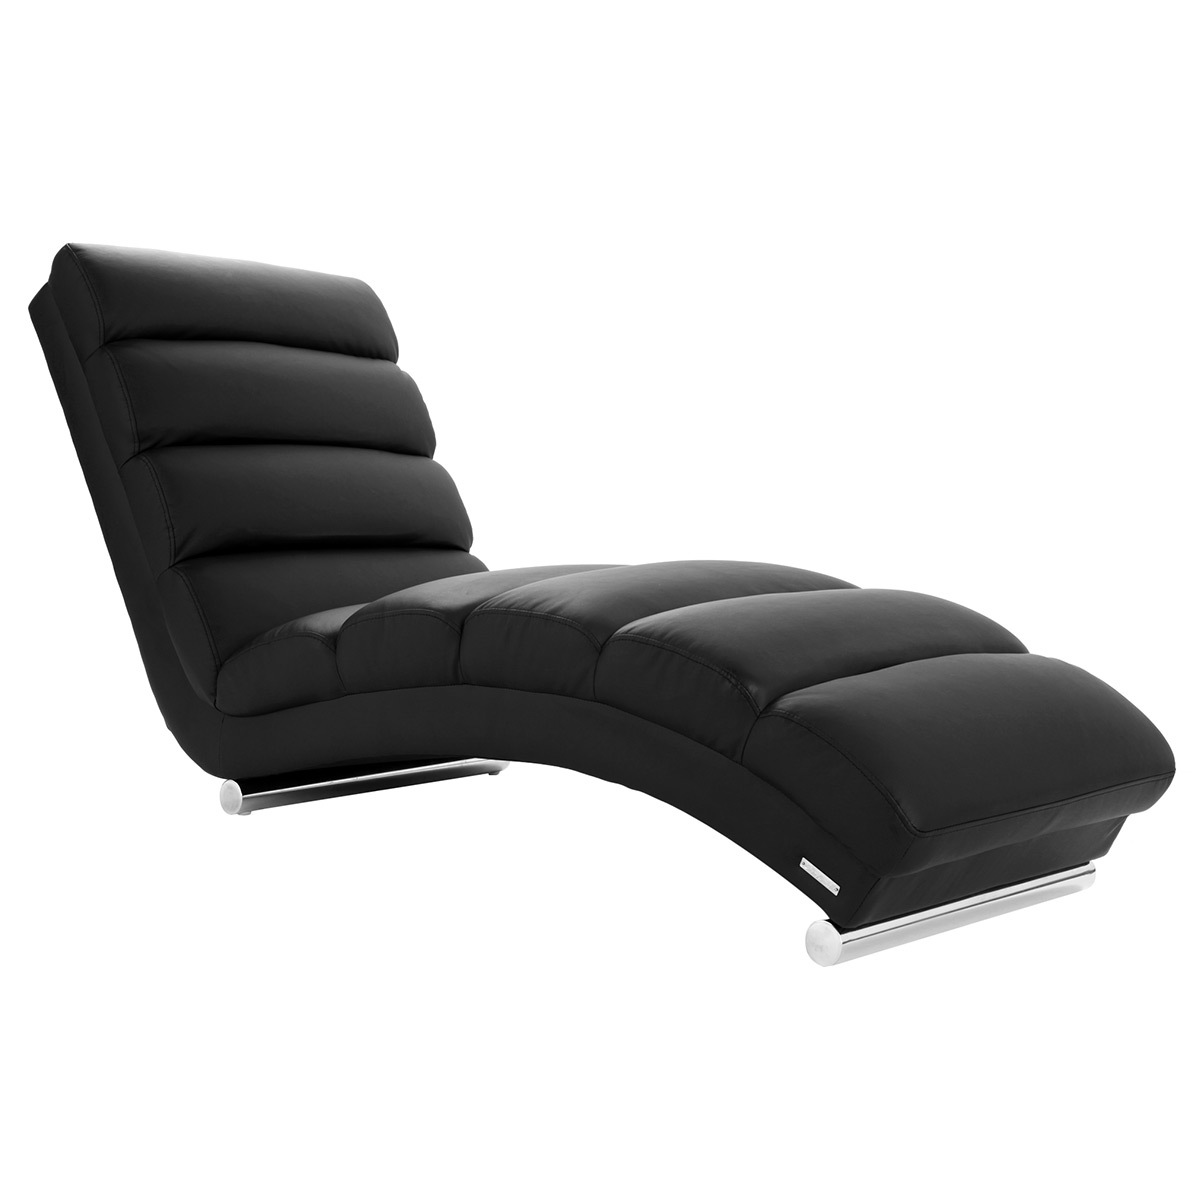 Chaise longue / fauteuil design noir TAYLOR vue1